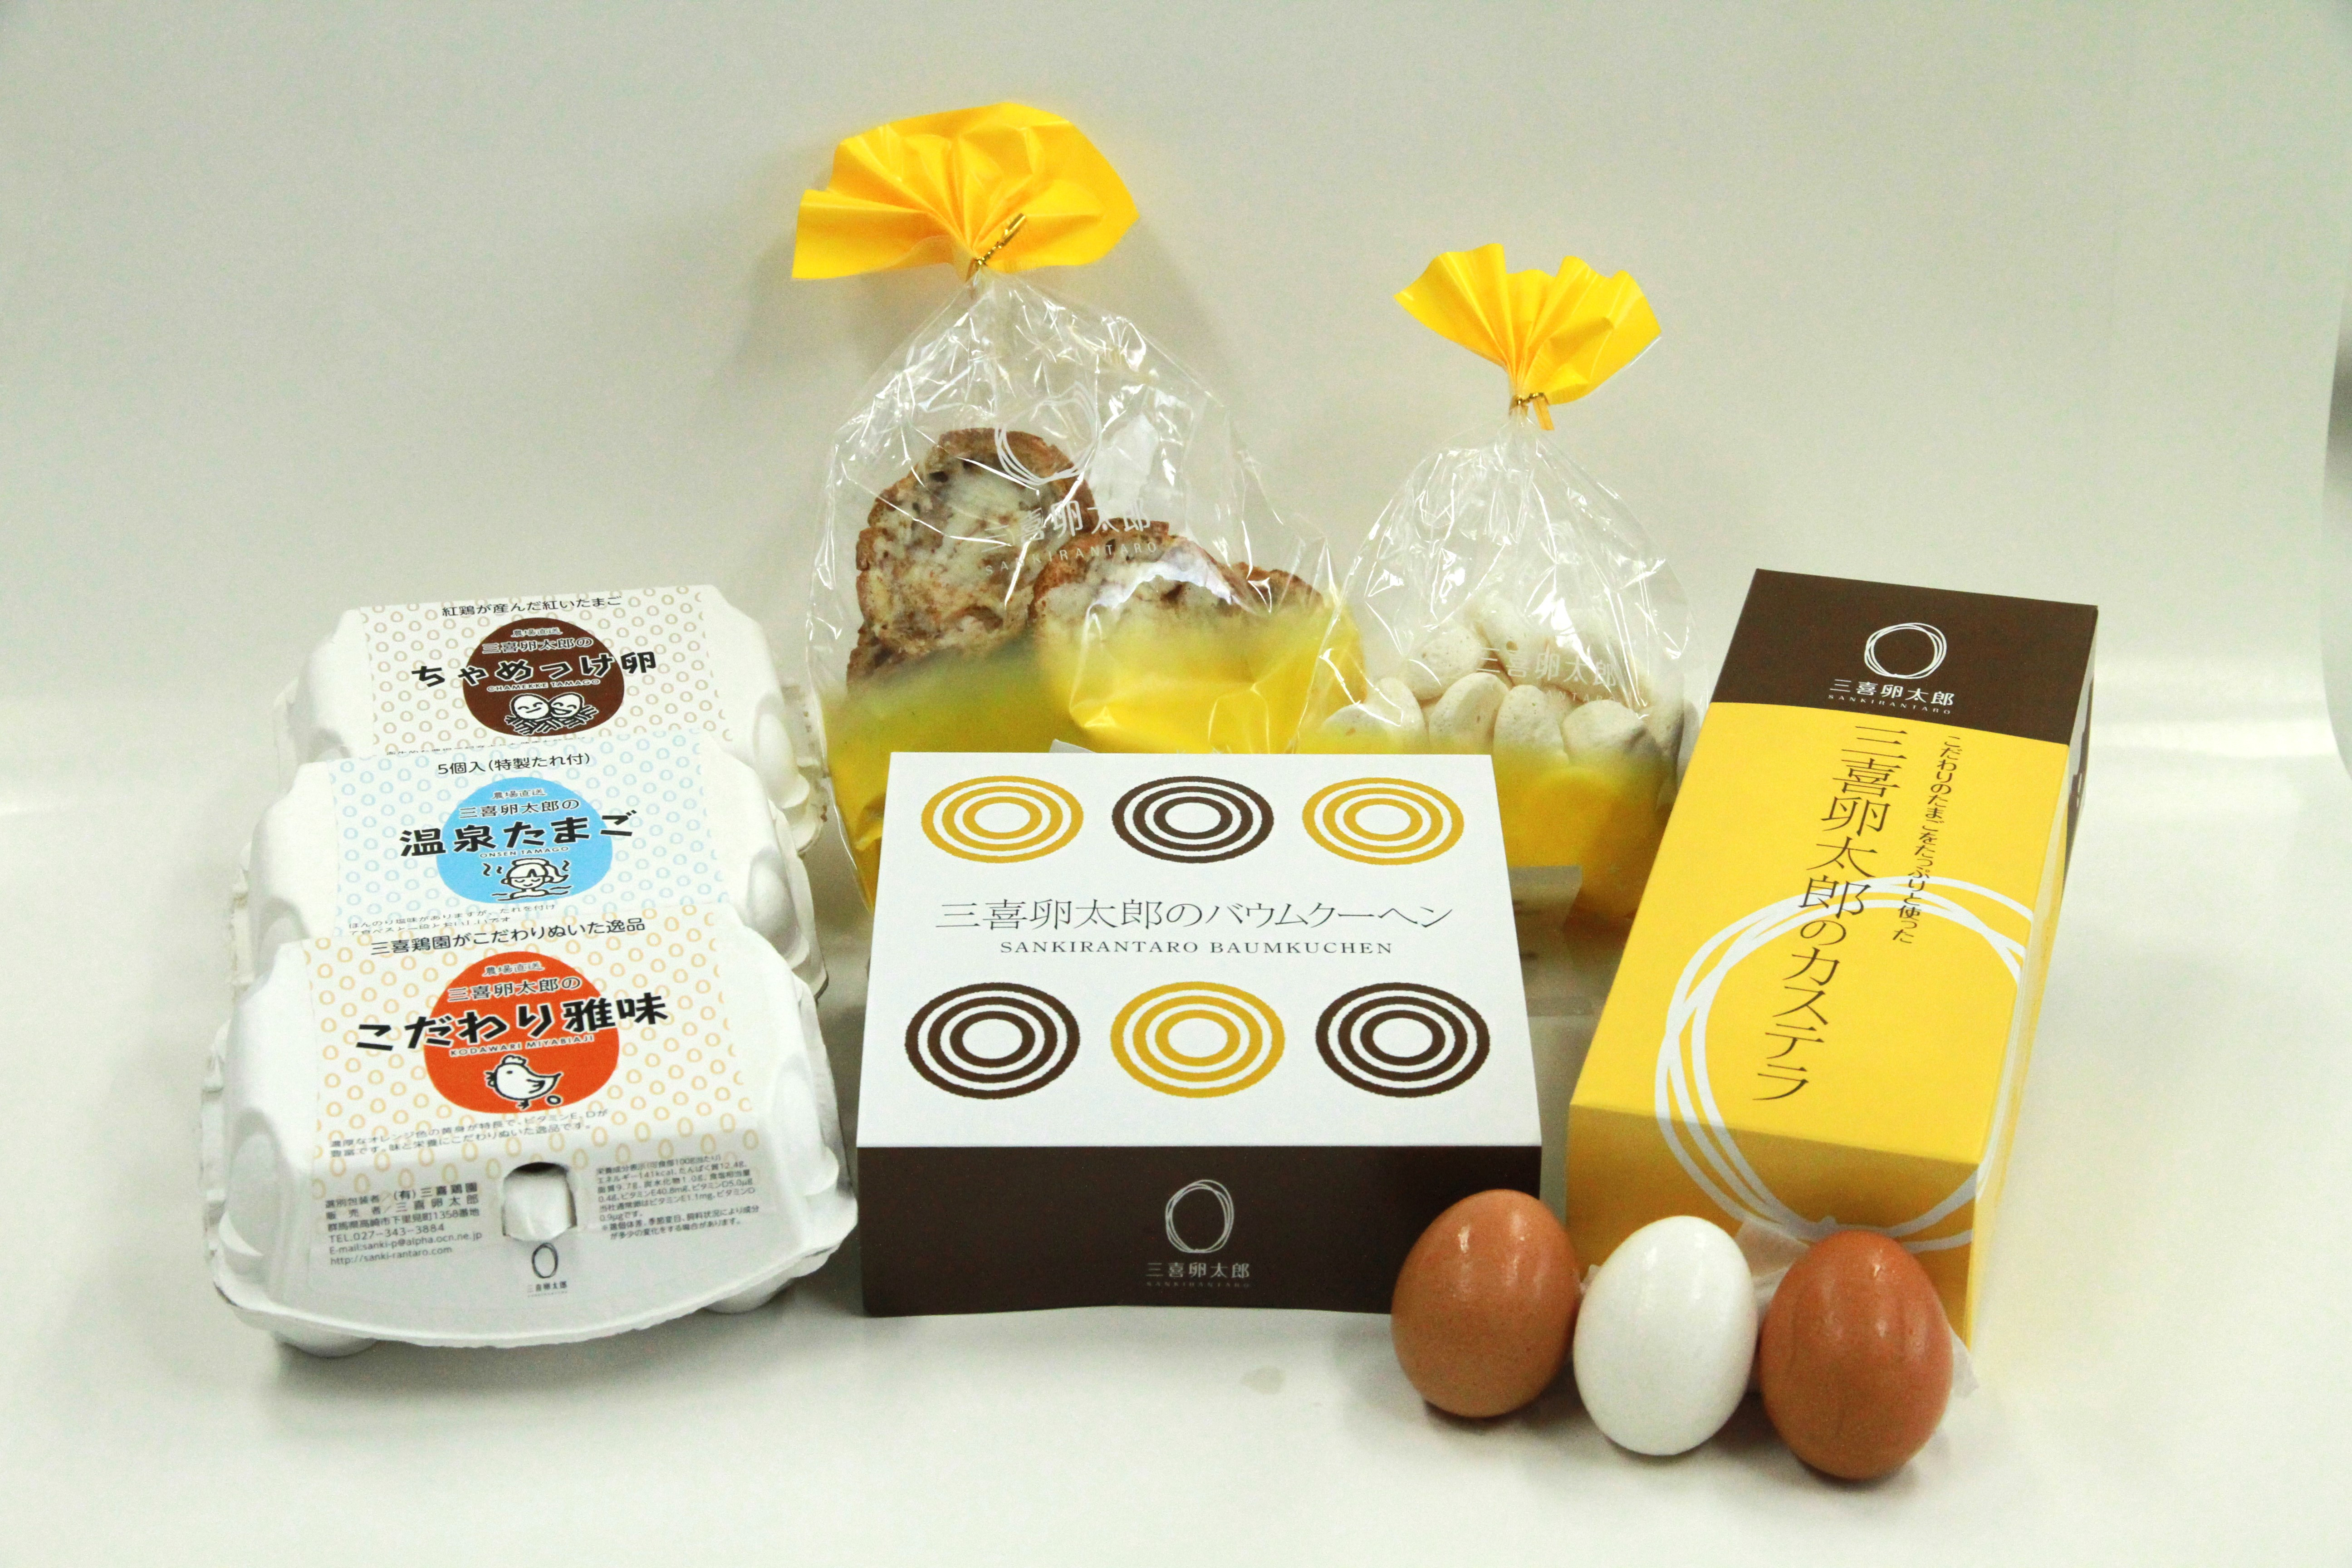 
【15A011】　三喜卵太郎の卵とお菓子のセット
